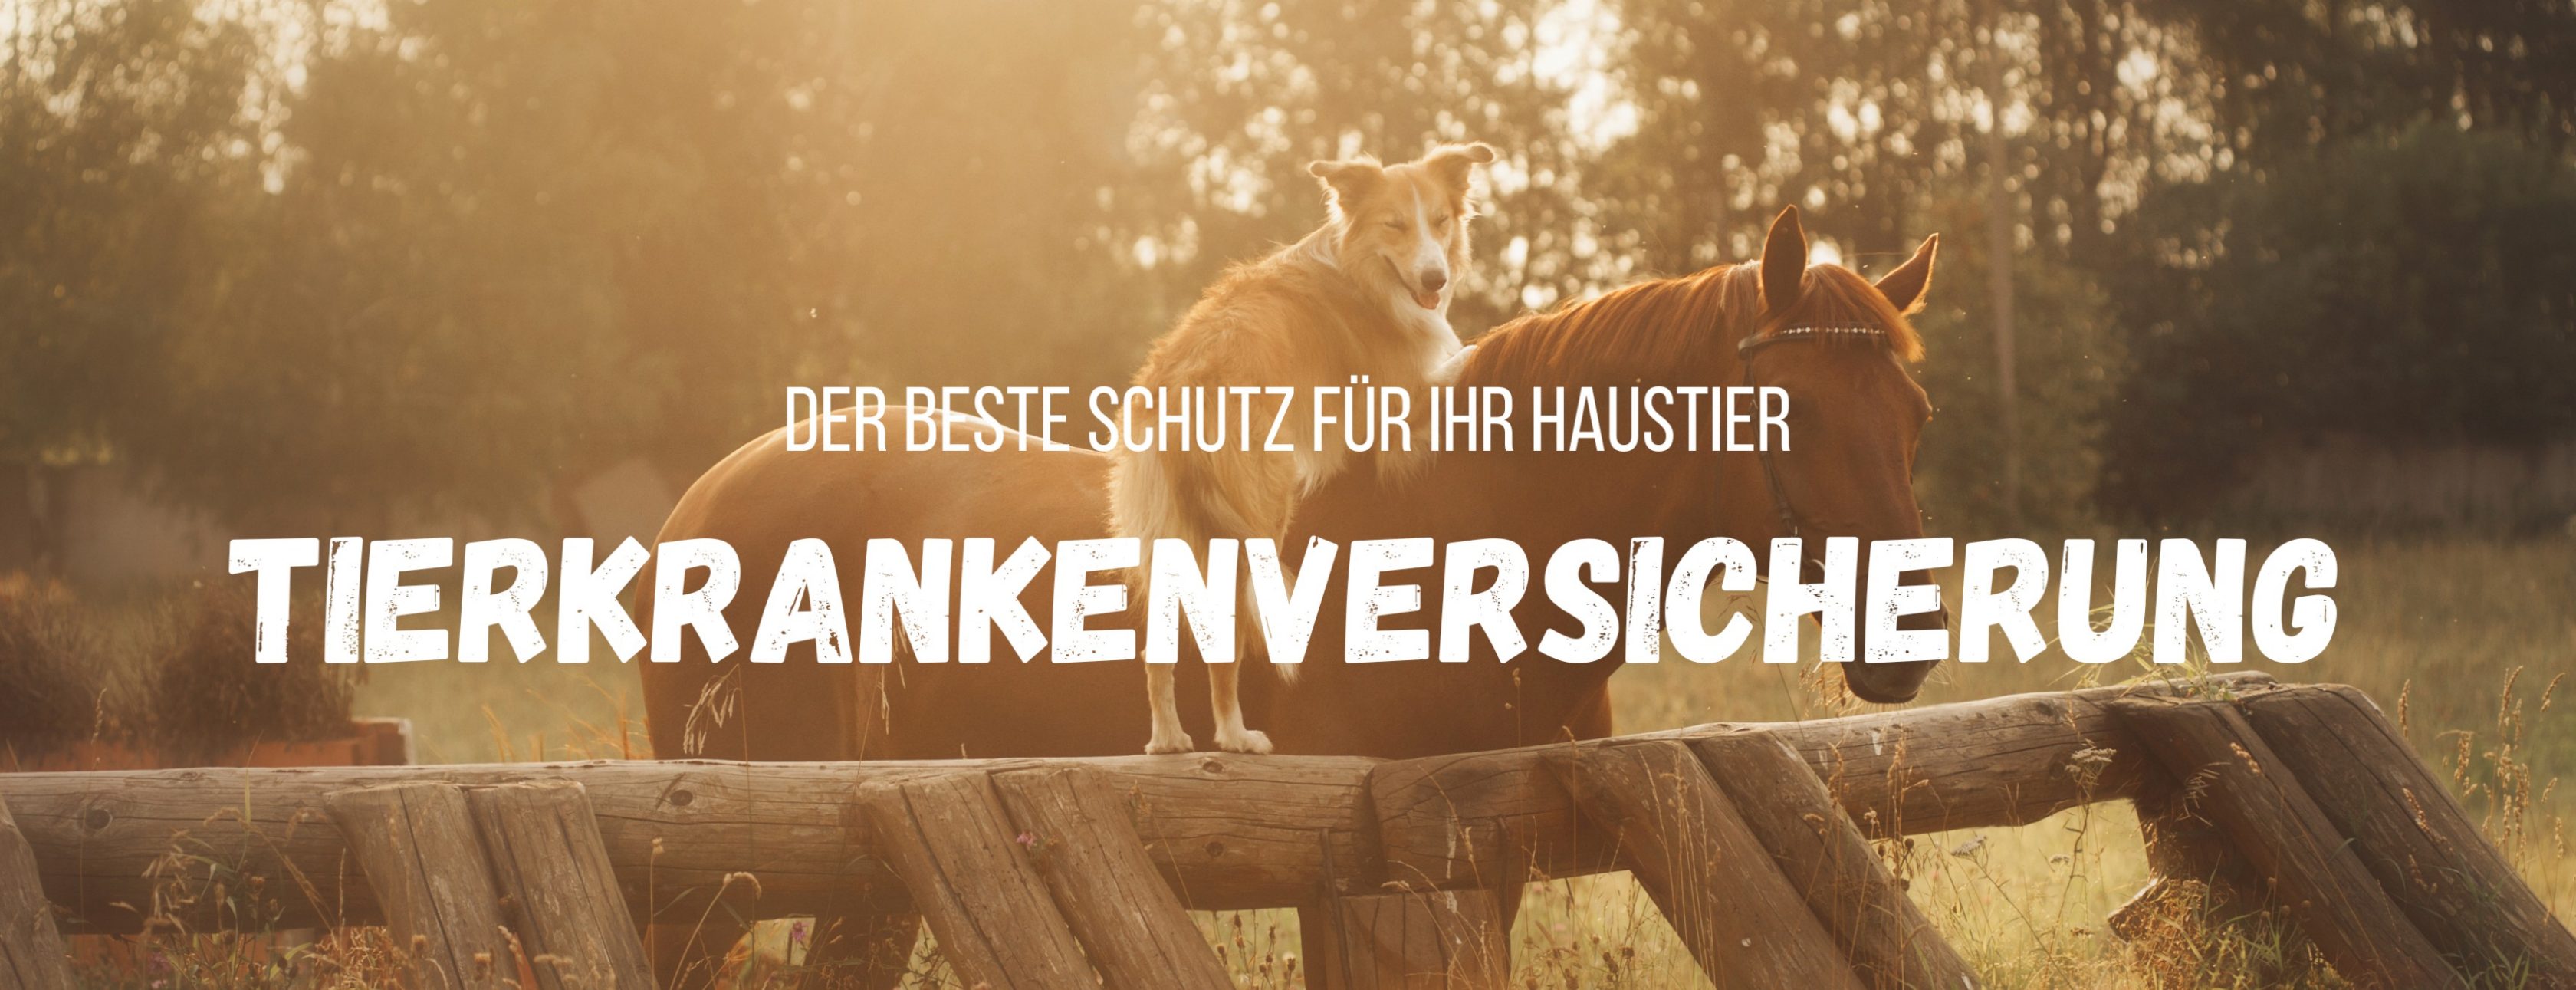 Allianz Versicherung Heidi Noormann Leer Ostfriesland - Tierkrankenversicherung OP-Versicherung Hund Pferd